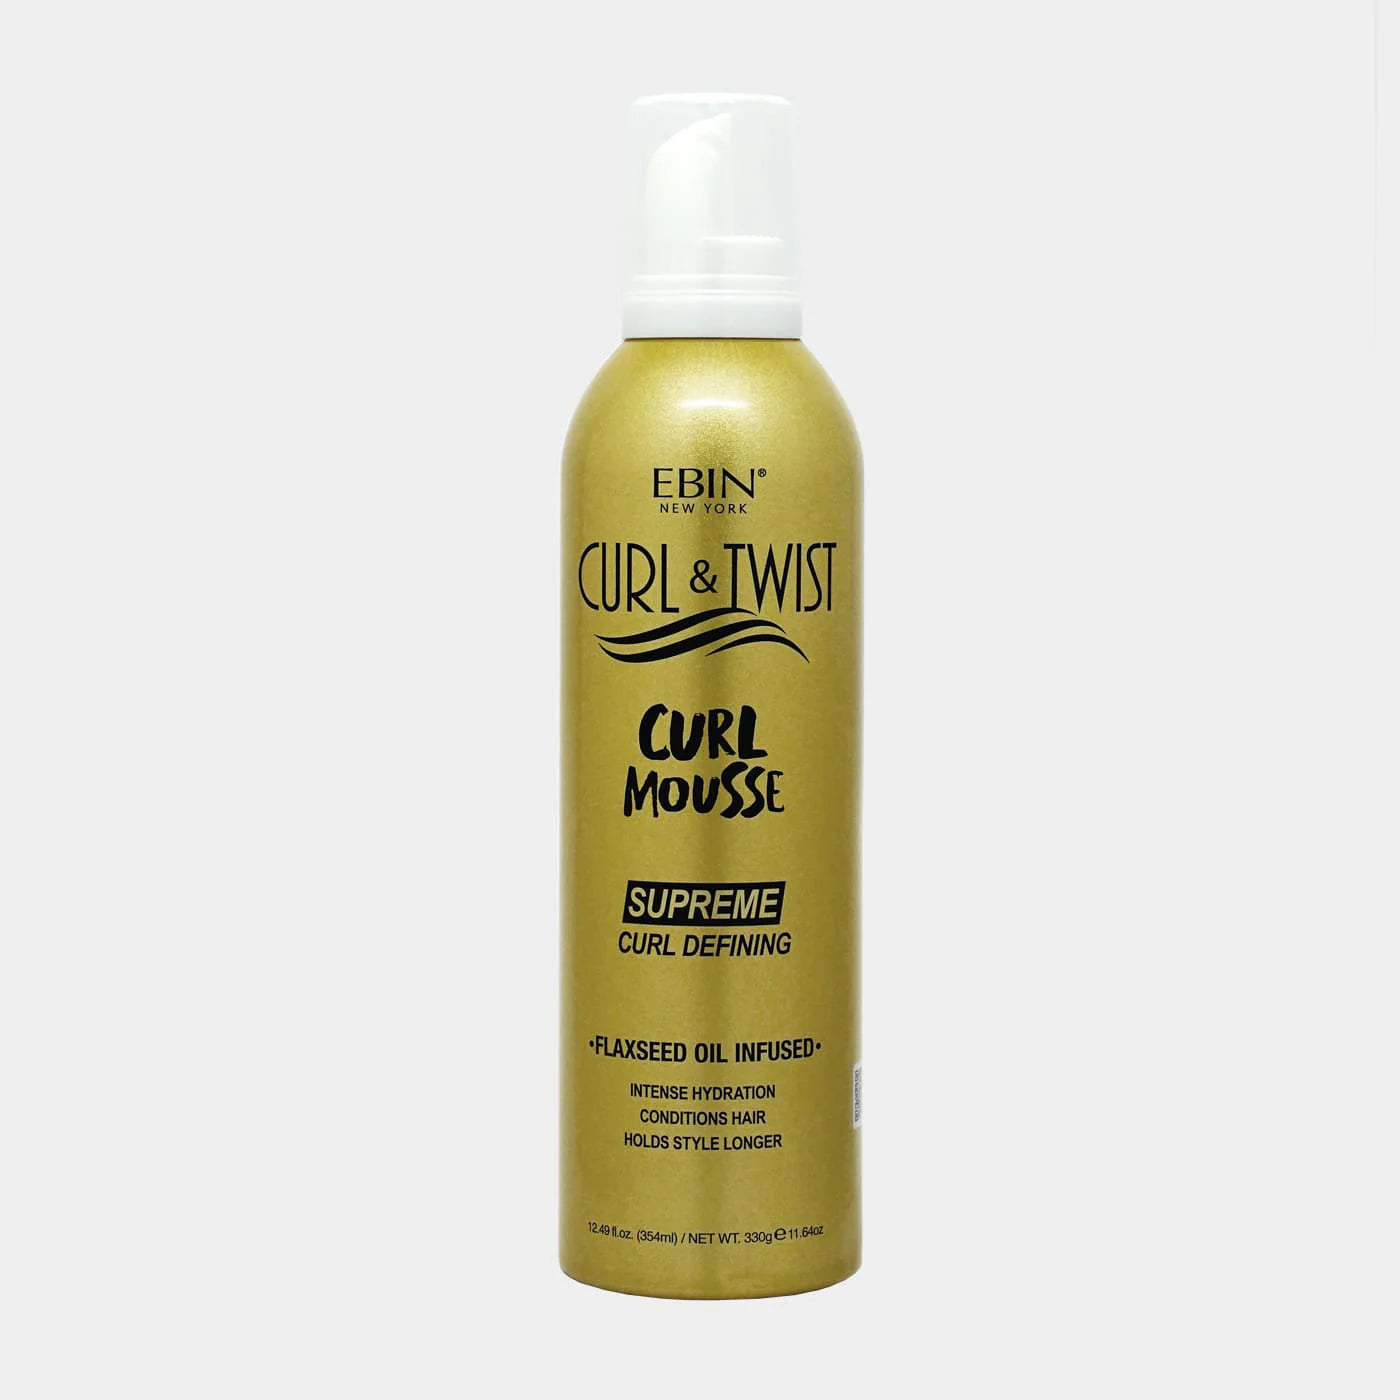 Curl & Twist Curl Mousse - Supreme Curl Defining 12.49 Oz.